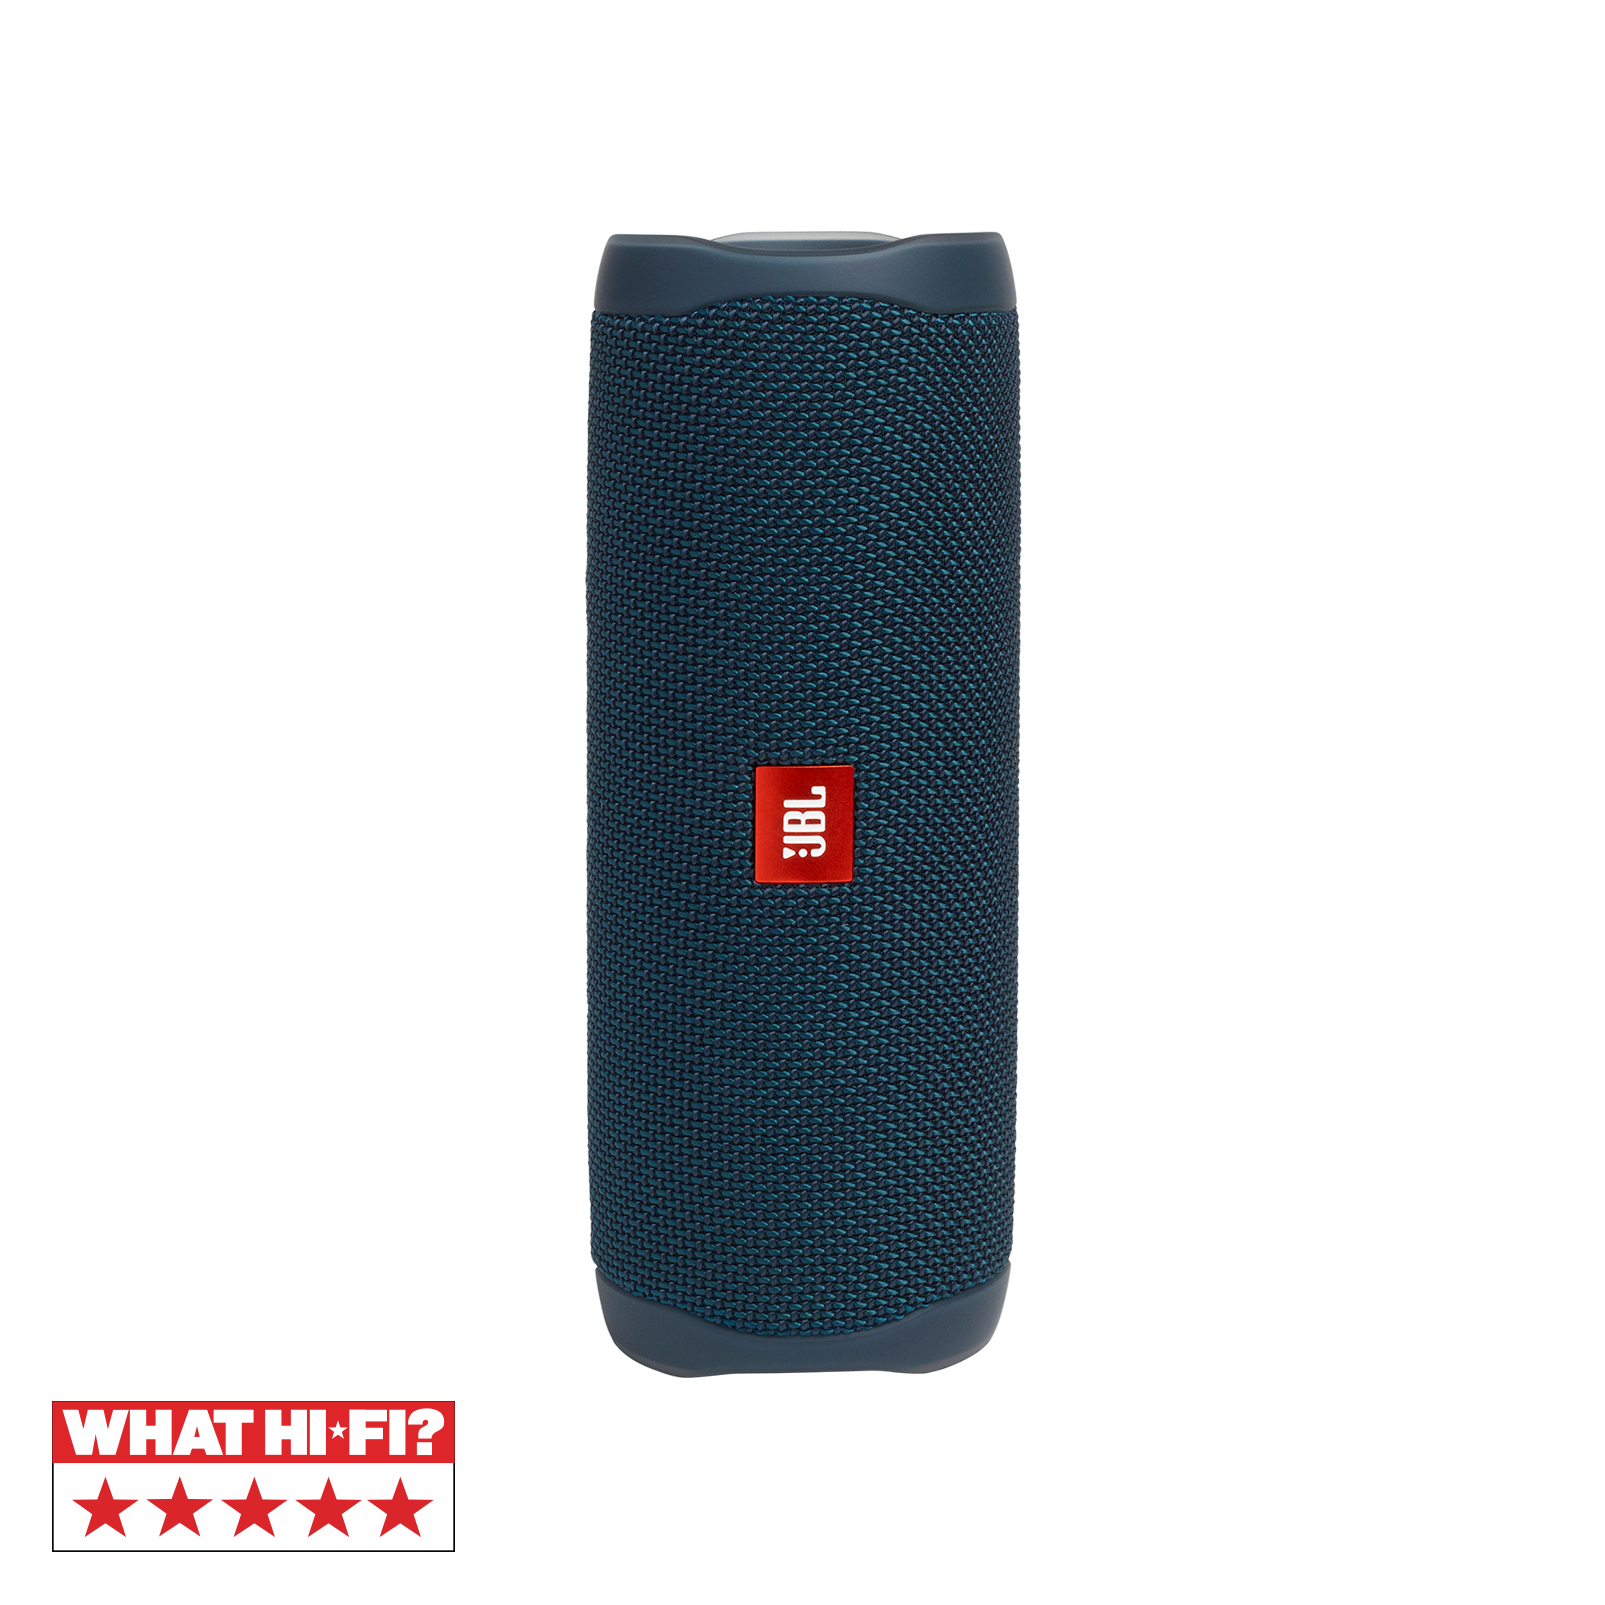 JBL Flip 5 - Blue - Portable Waterproof Speaker - Hero